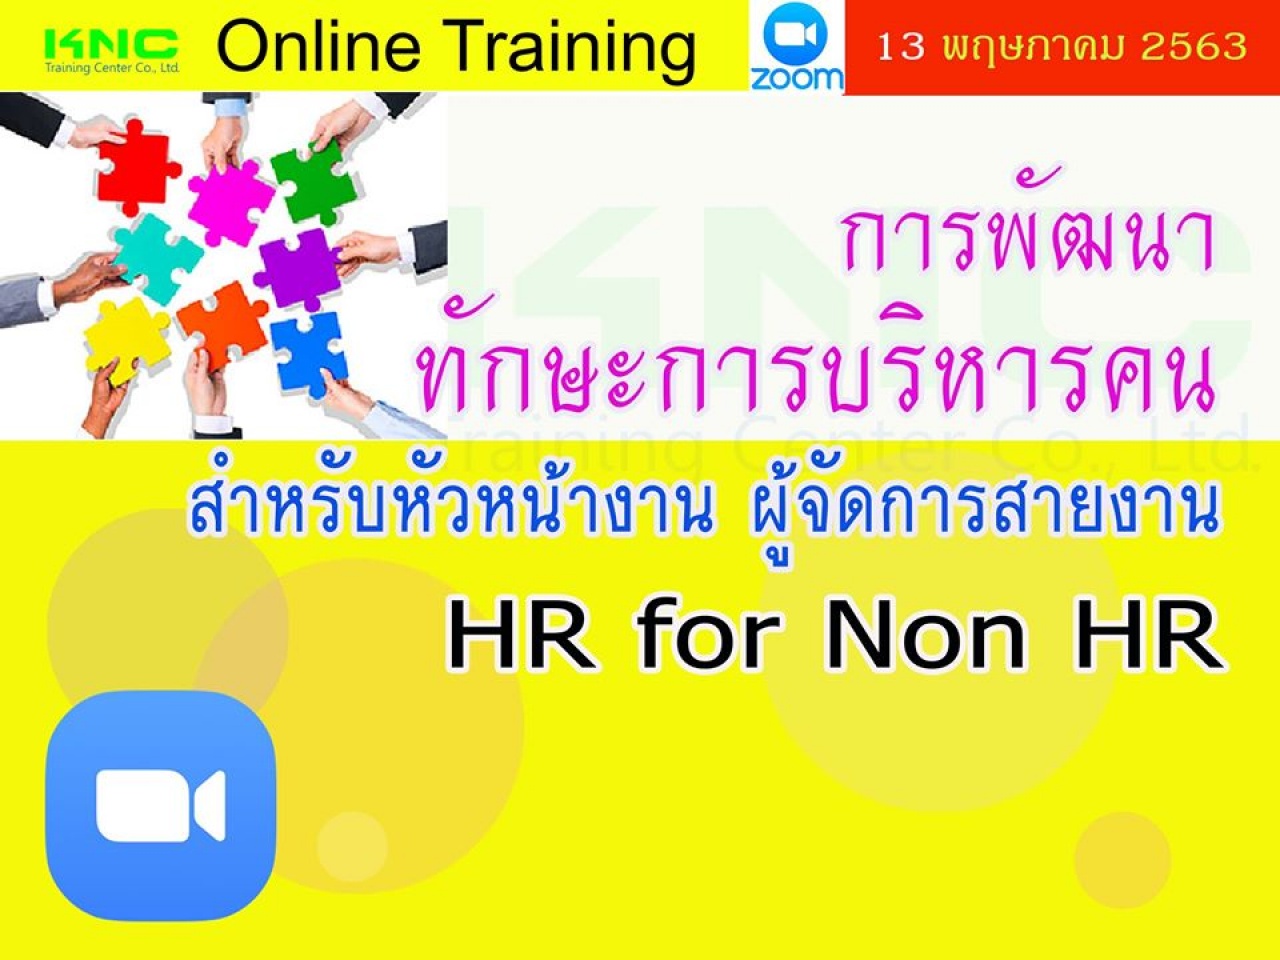 สัมมนาออนไลน์ : การพัฒนาทักษะการบริหารคนสำหรับหัวหน้างาน ผู้จัดการสายงาน  (HR for Non HR)